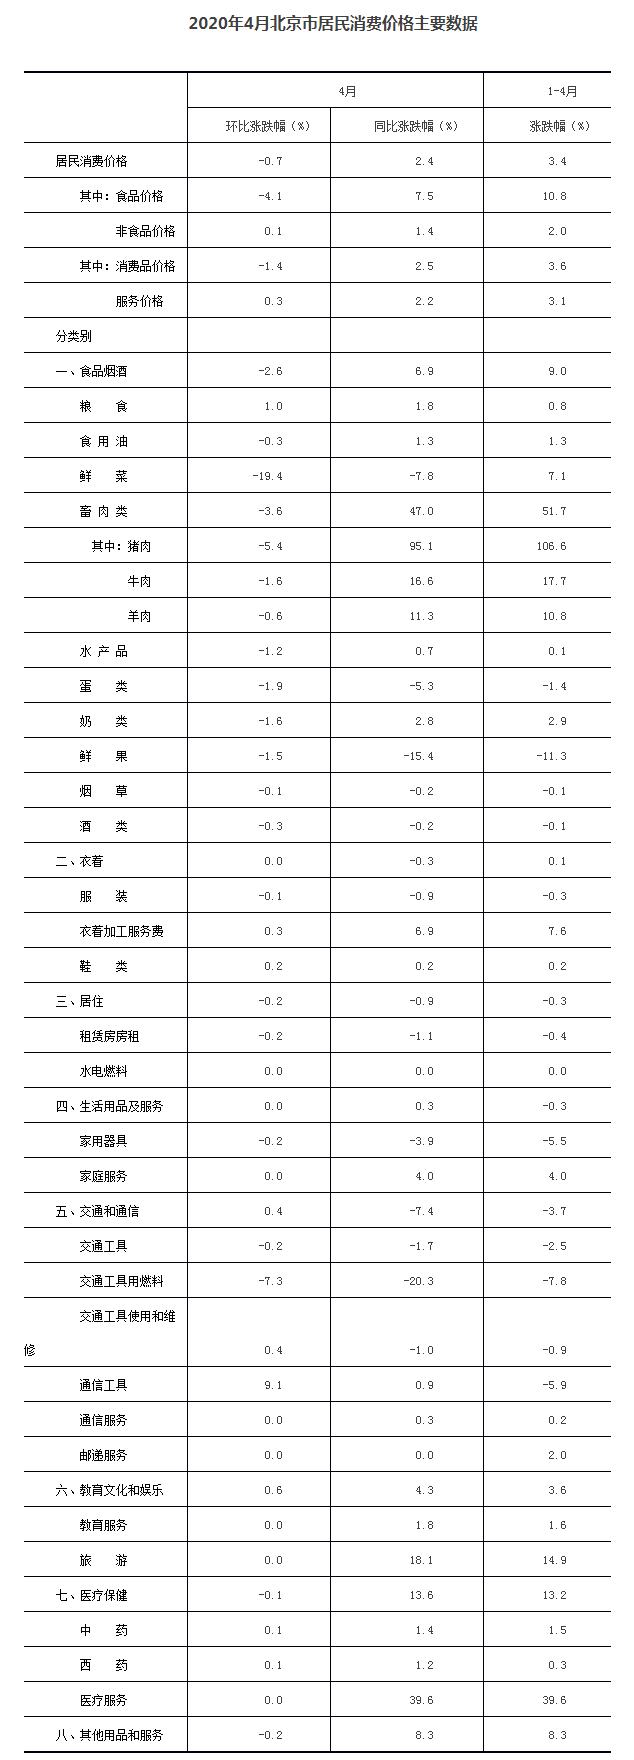 2020年4月北京市居民消费价格主要数据